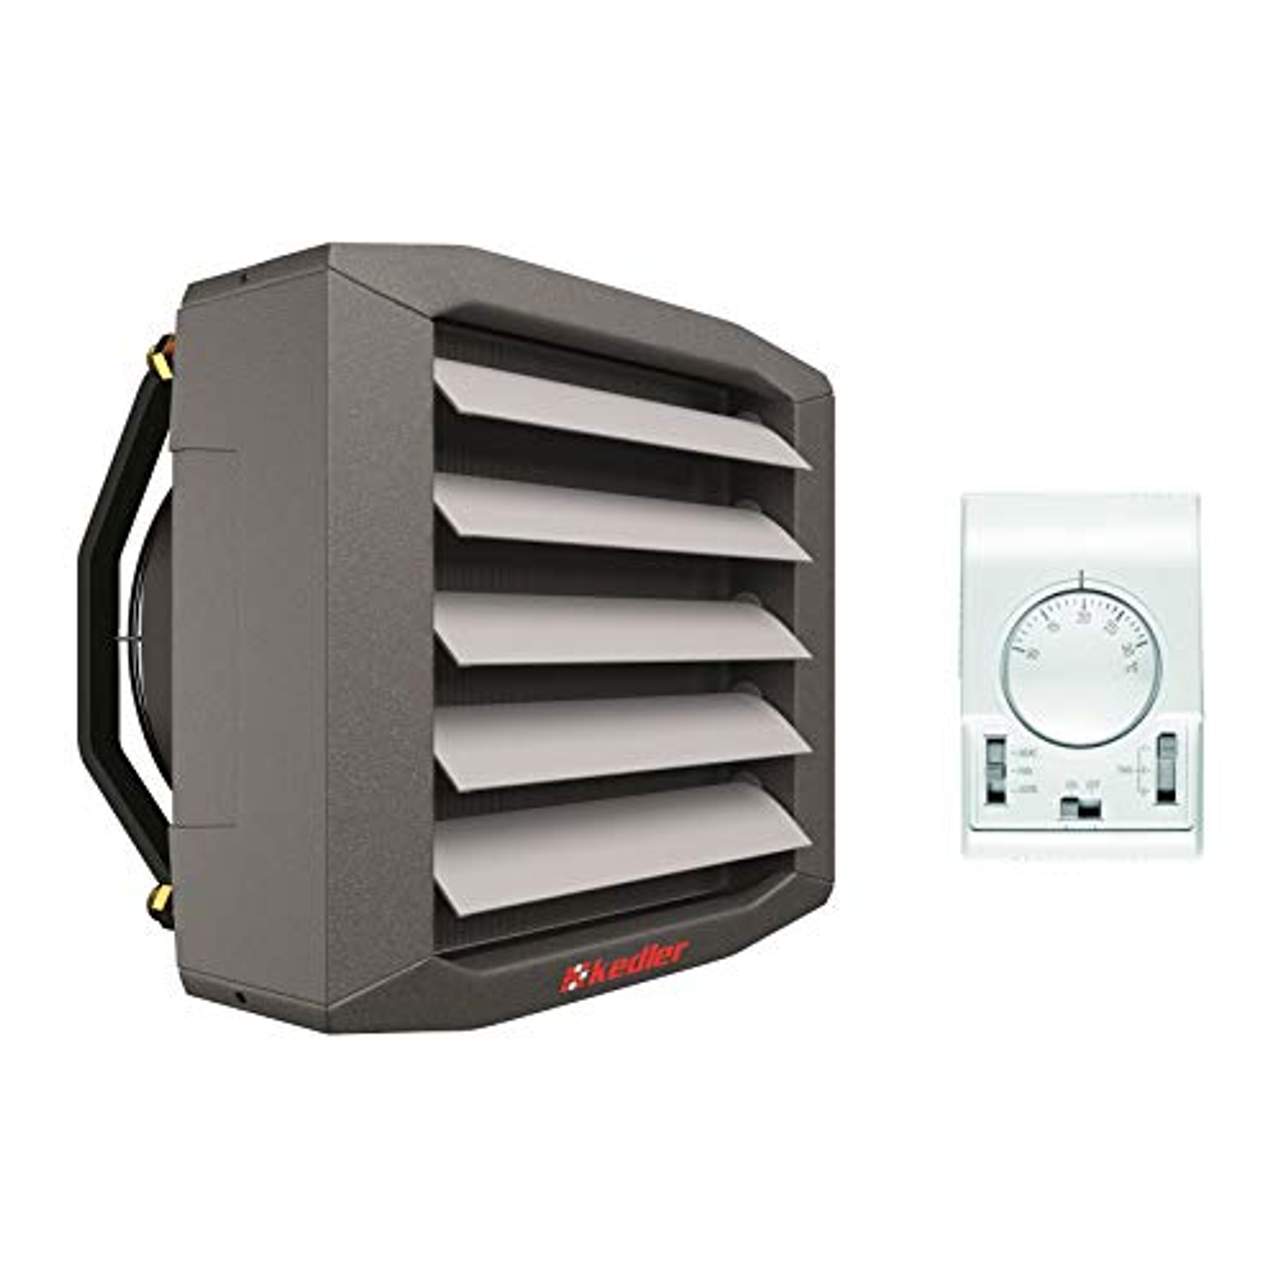 Luftheizer 50 kW Montagekonsolle inkl. Steuerung Thermostat 